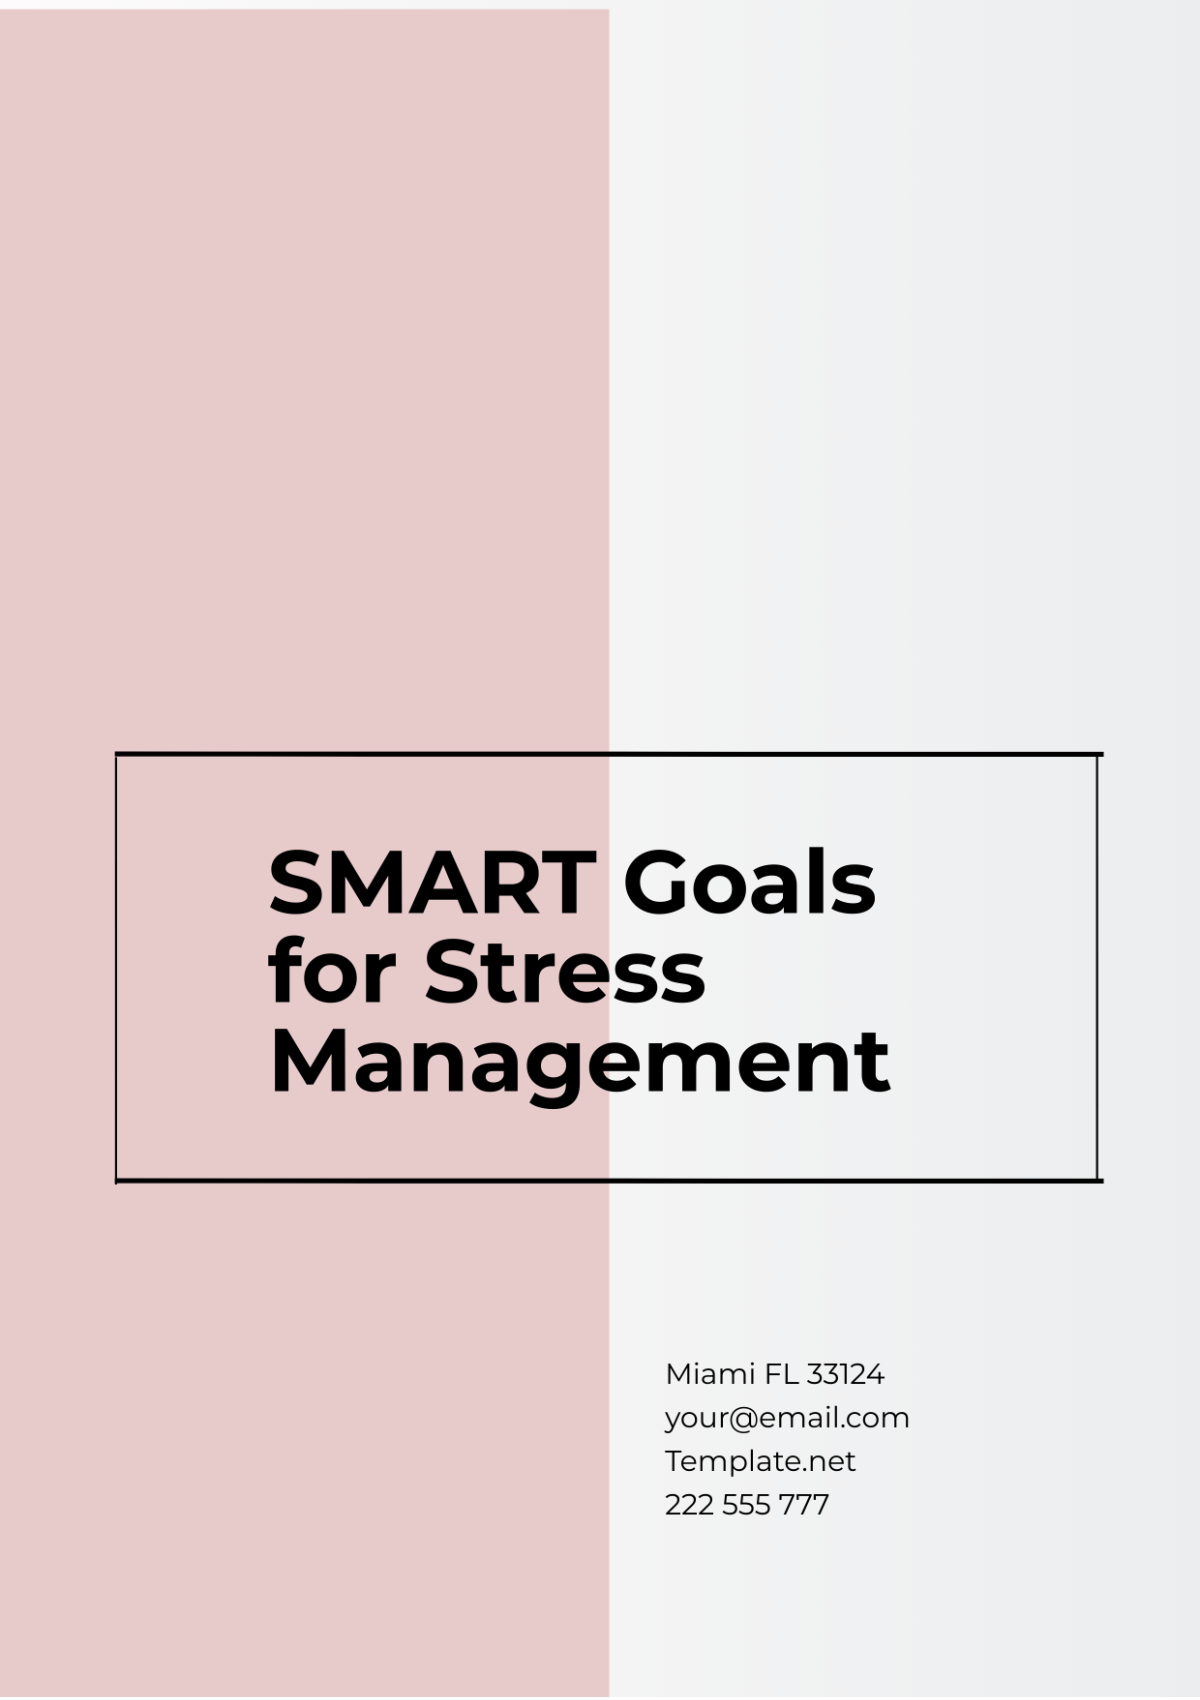 SMART Goals Template for Stress Management